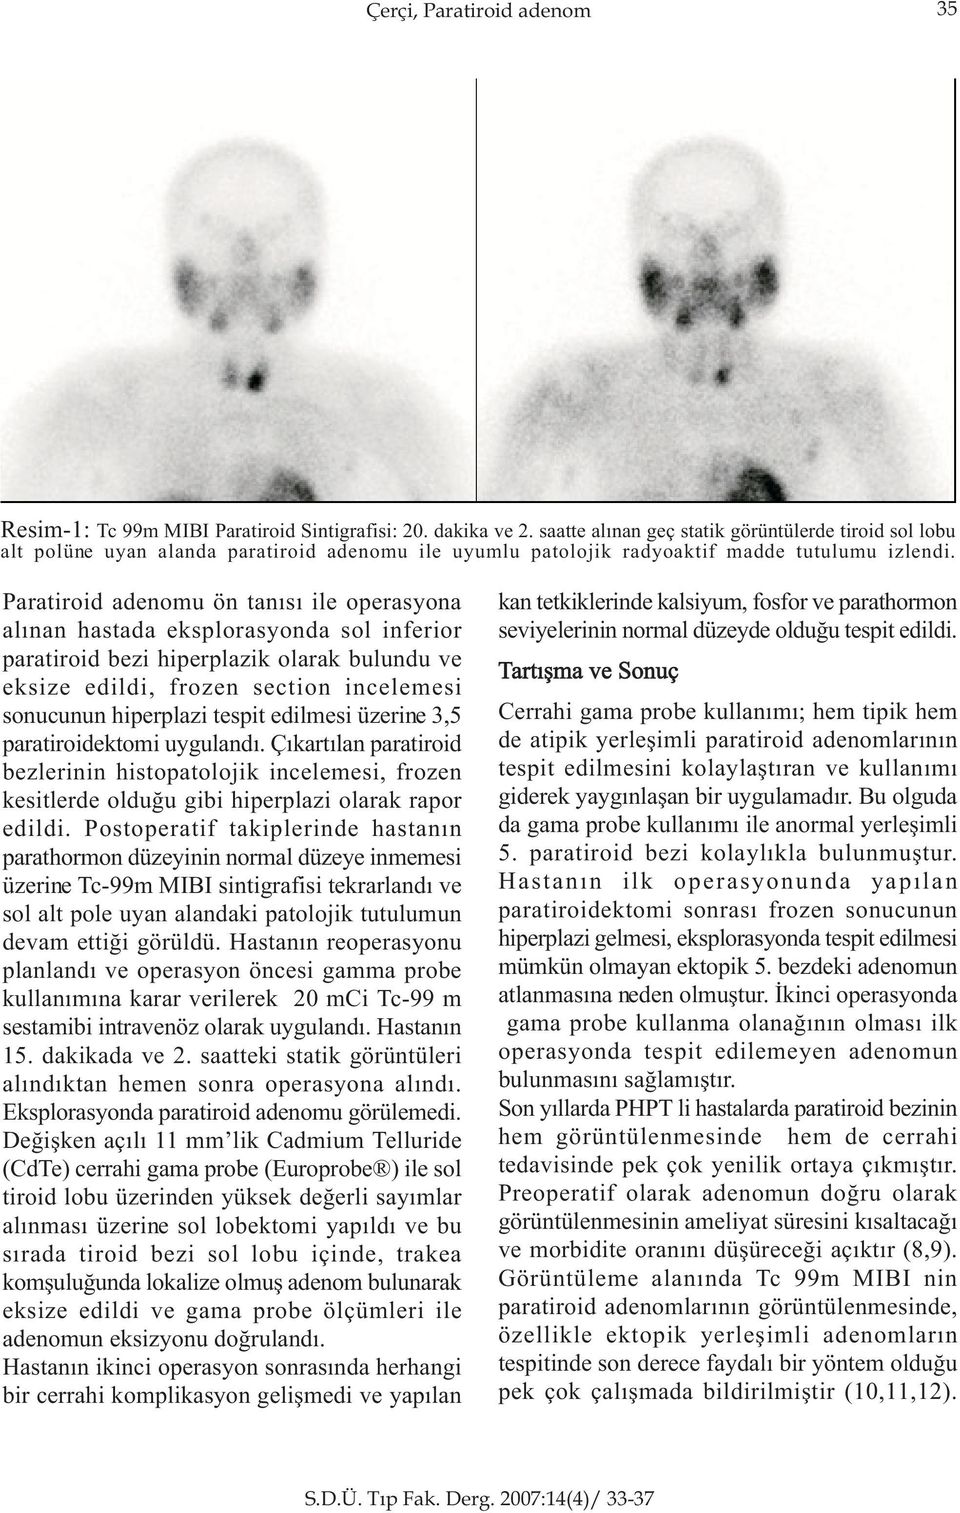 Paratiroid adenomu ön tanýsý ile operasyona alýnan hastada eksplorasyonda sol inferior paratiroid bezi hiperplazik olarak bulundu ve eksize edildi, frozen section incelemesi sonucunun hiperplazi